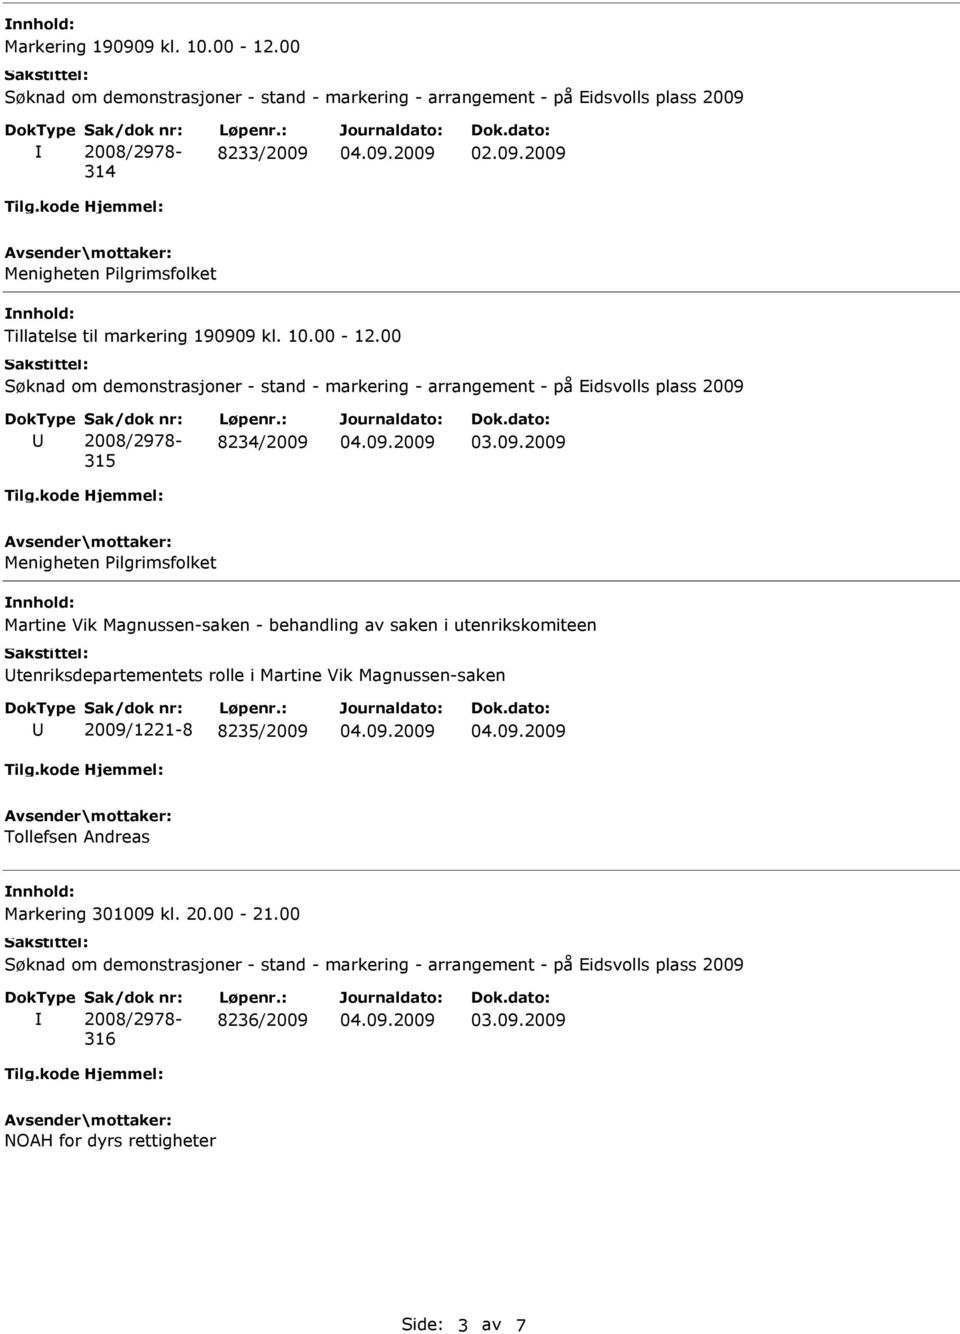 00 315 8234/2009 Menigheten Pilgrimsfolket Martine Vik Magnussen-saken - behandling av saken i